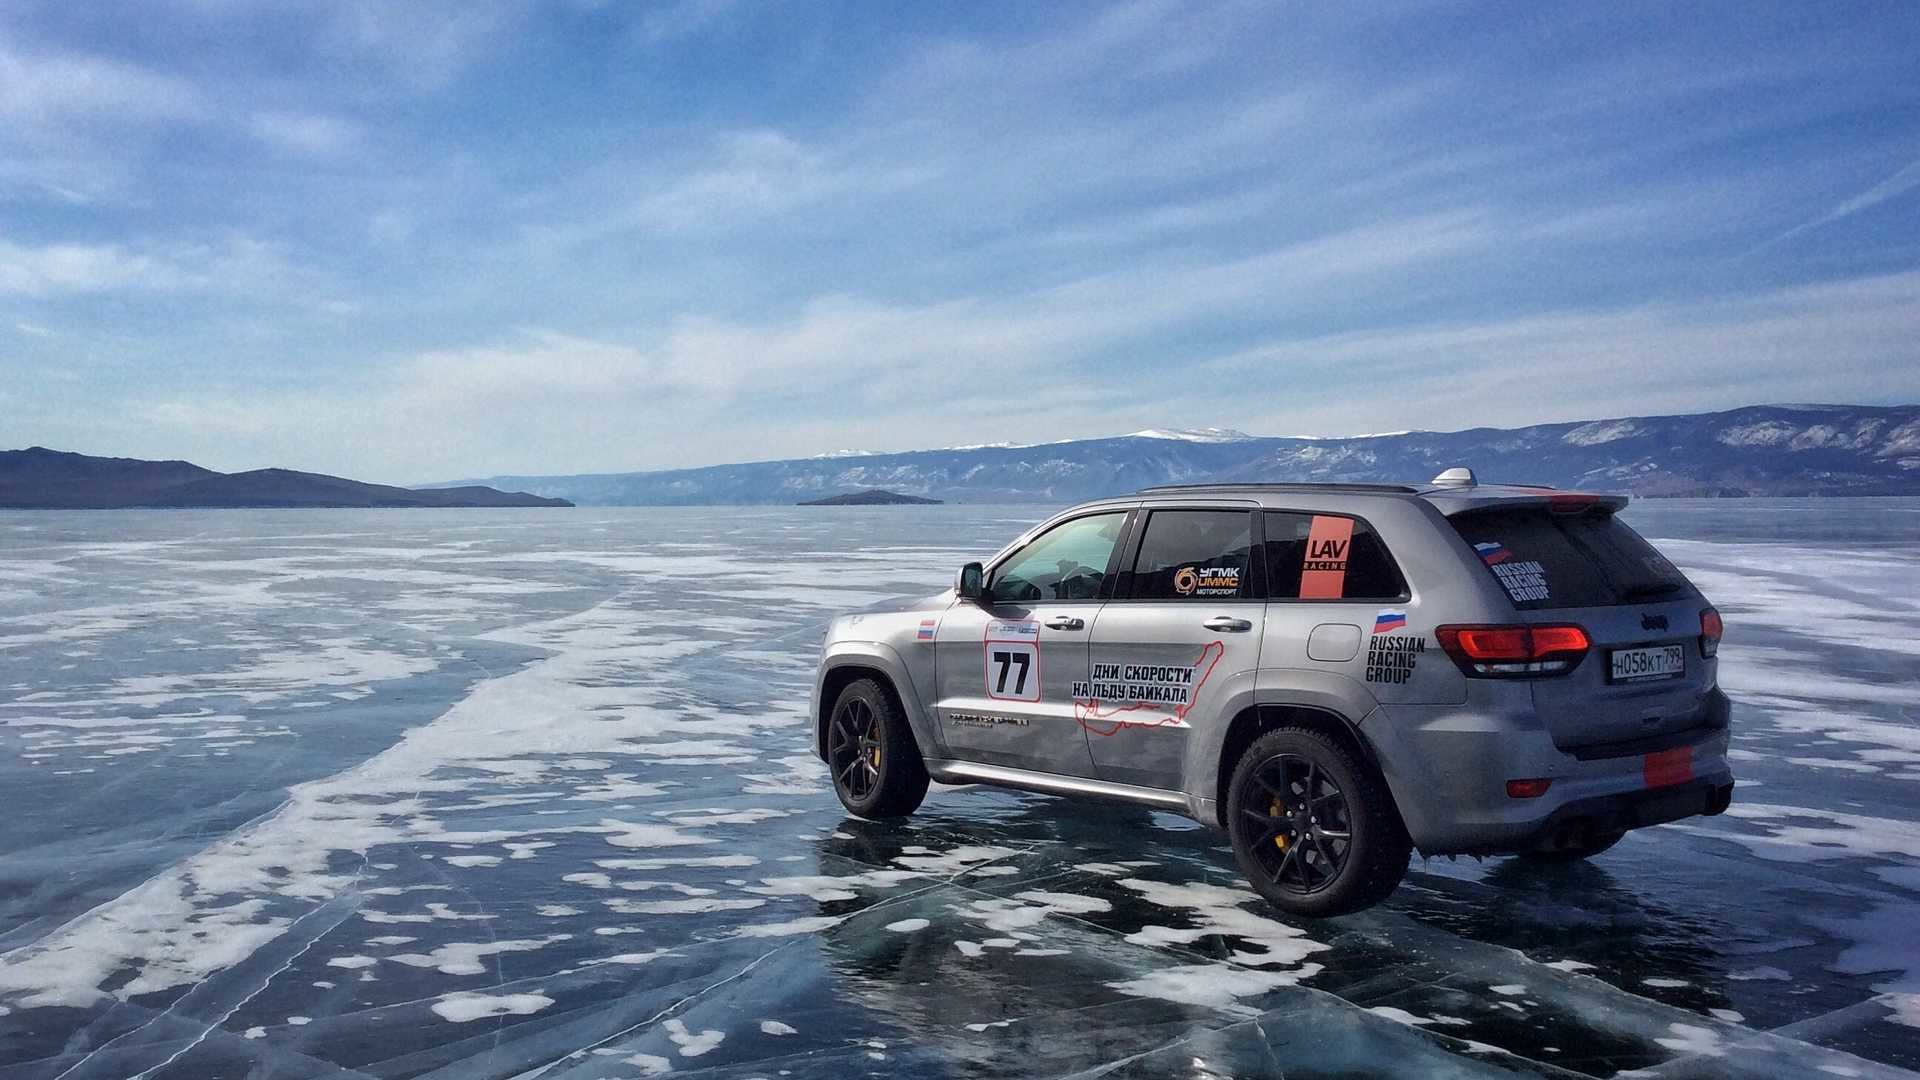 Jeep Grand Cherokee Trackhawk je nejrychlejším SUV světa na ledě